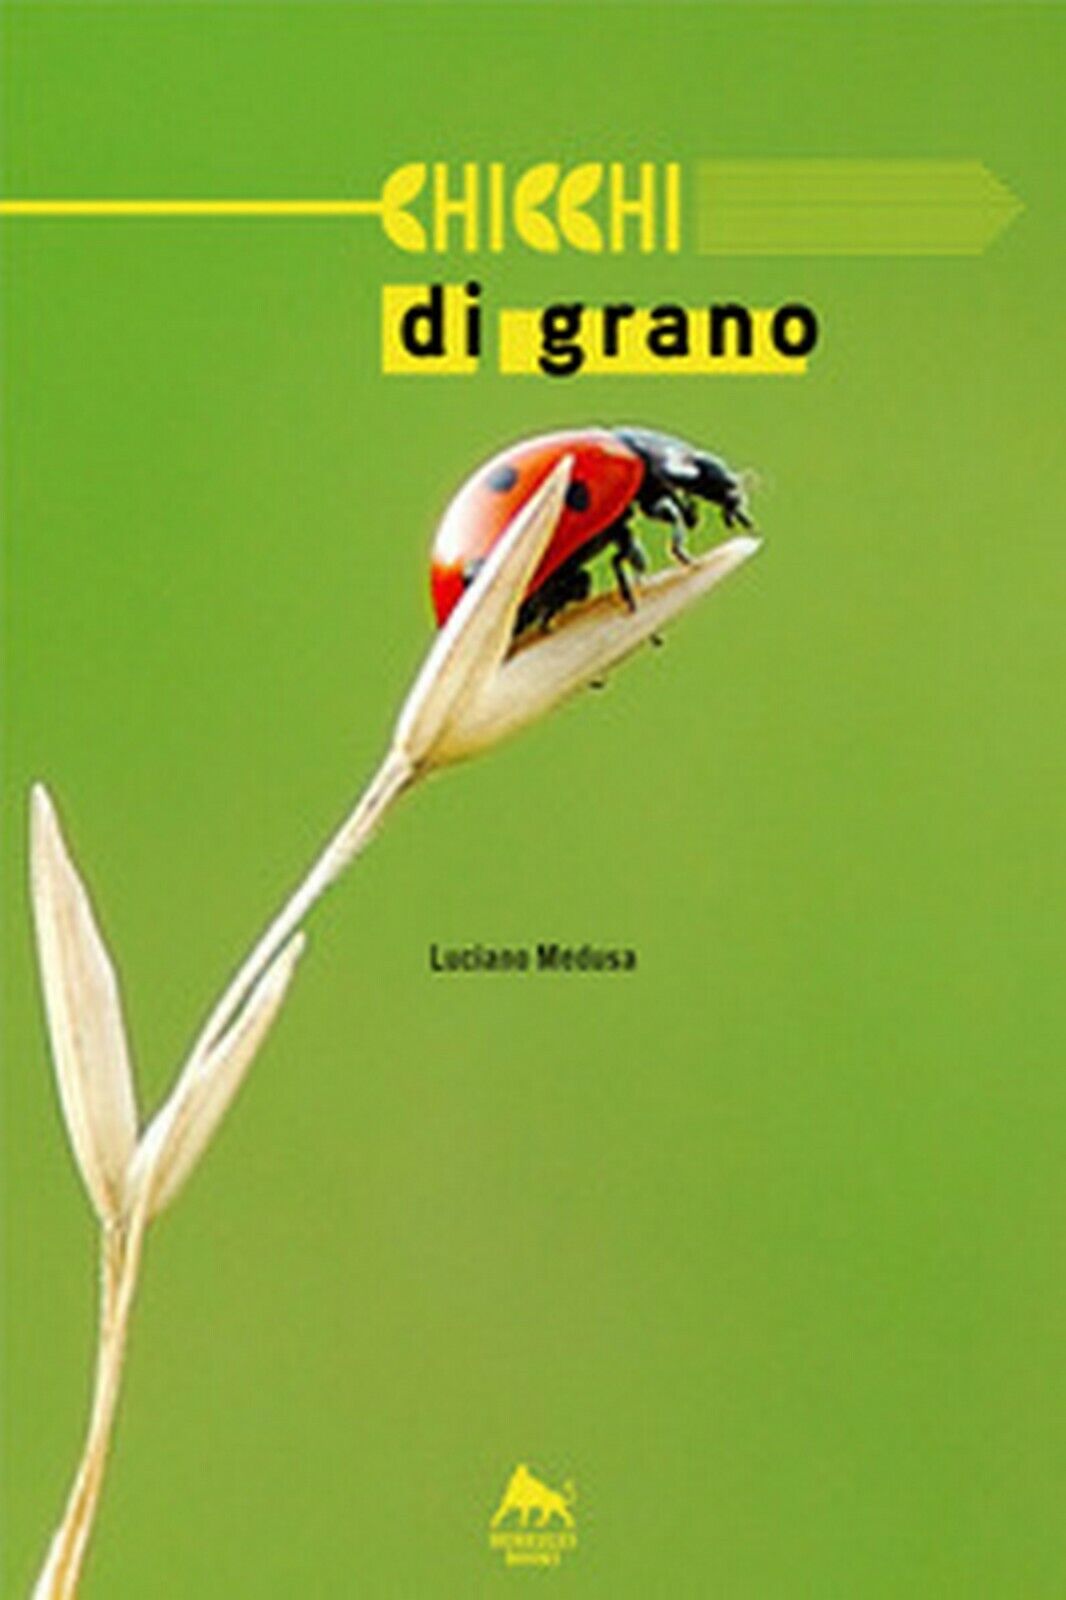 Chicchi di grano  di Luciano Medusa,  2018,  Youcanprint libro usato